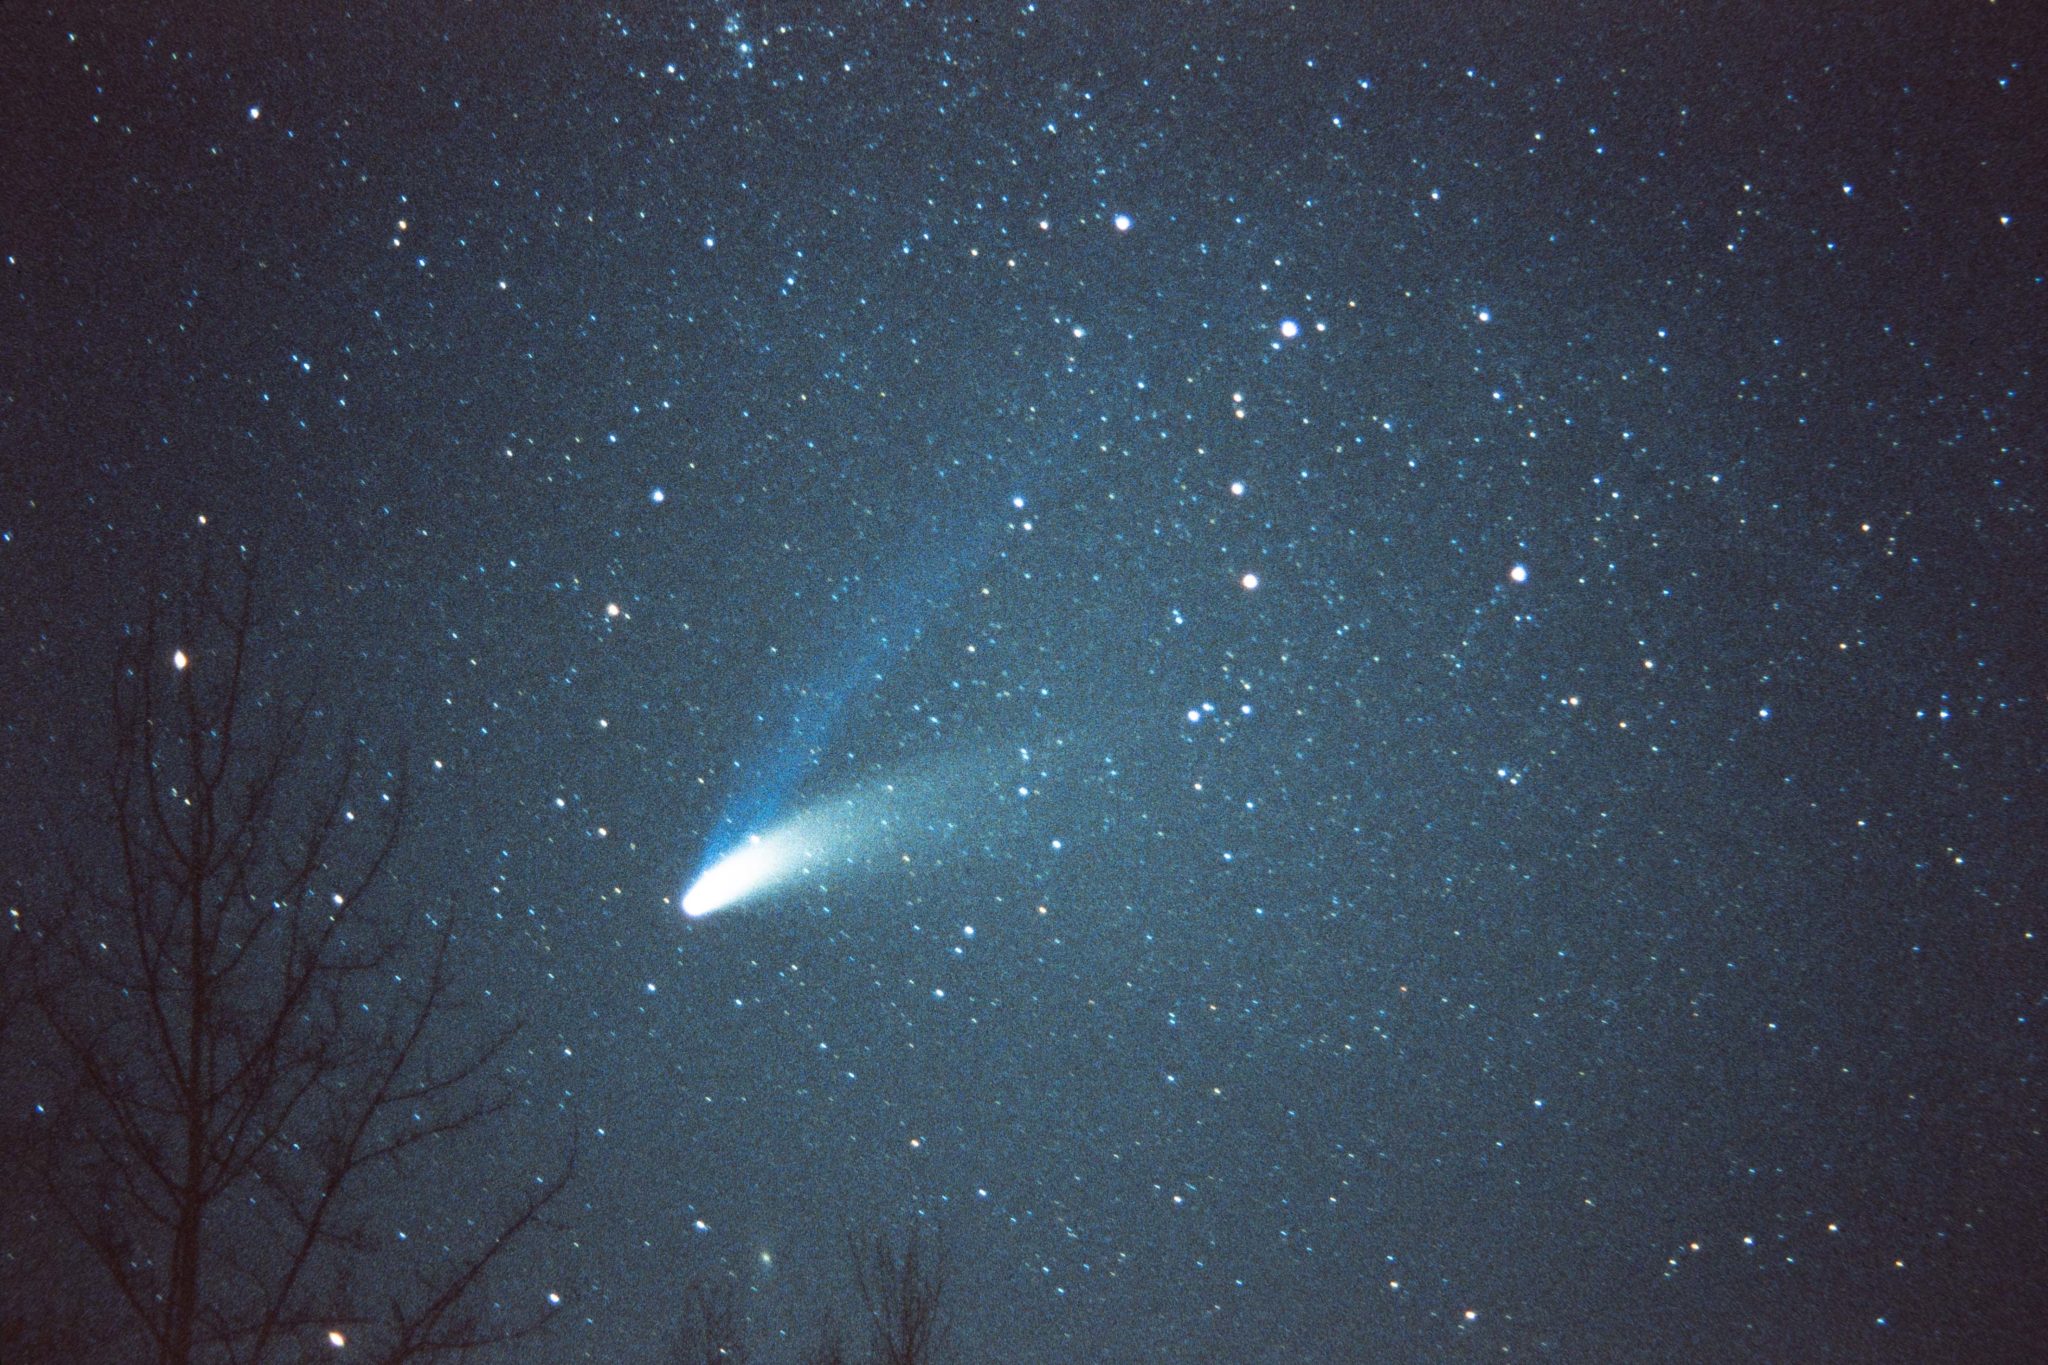 next visible comet